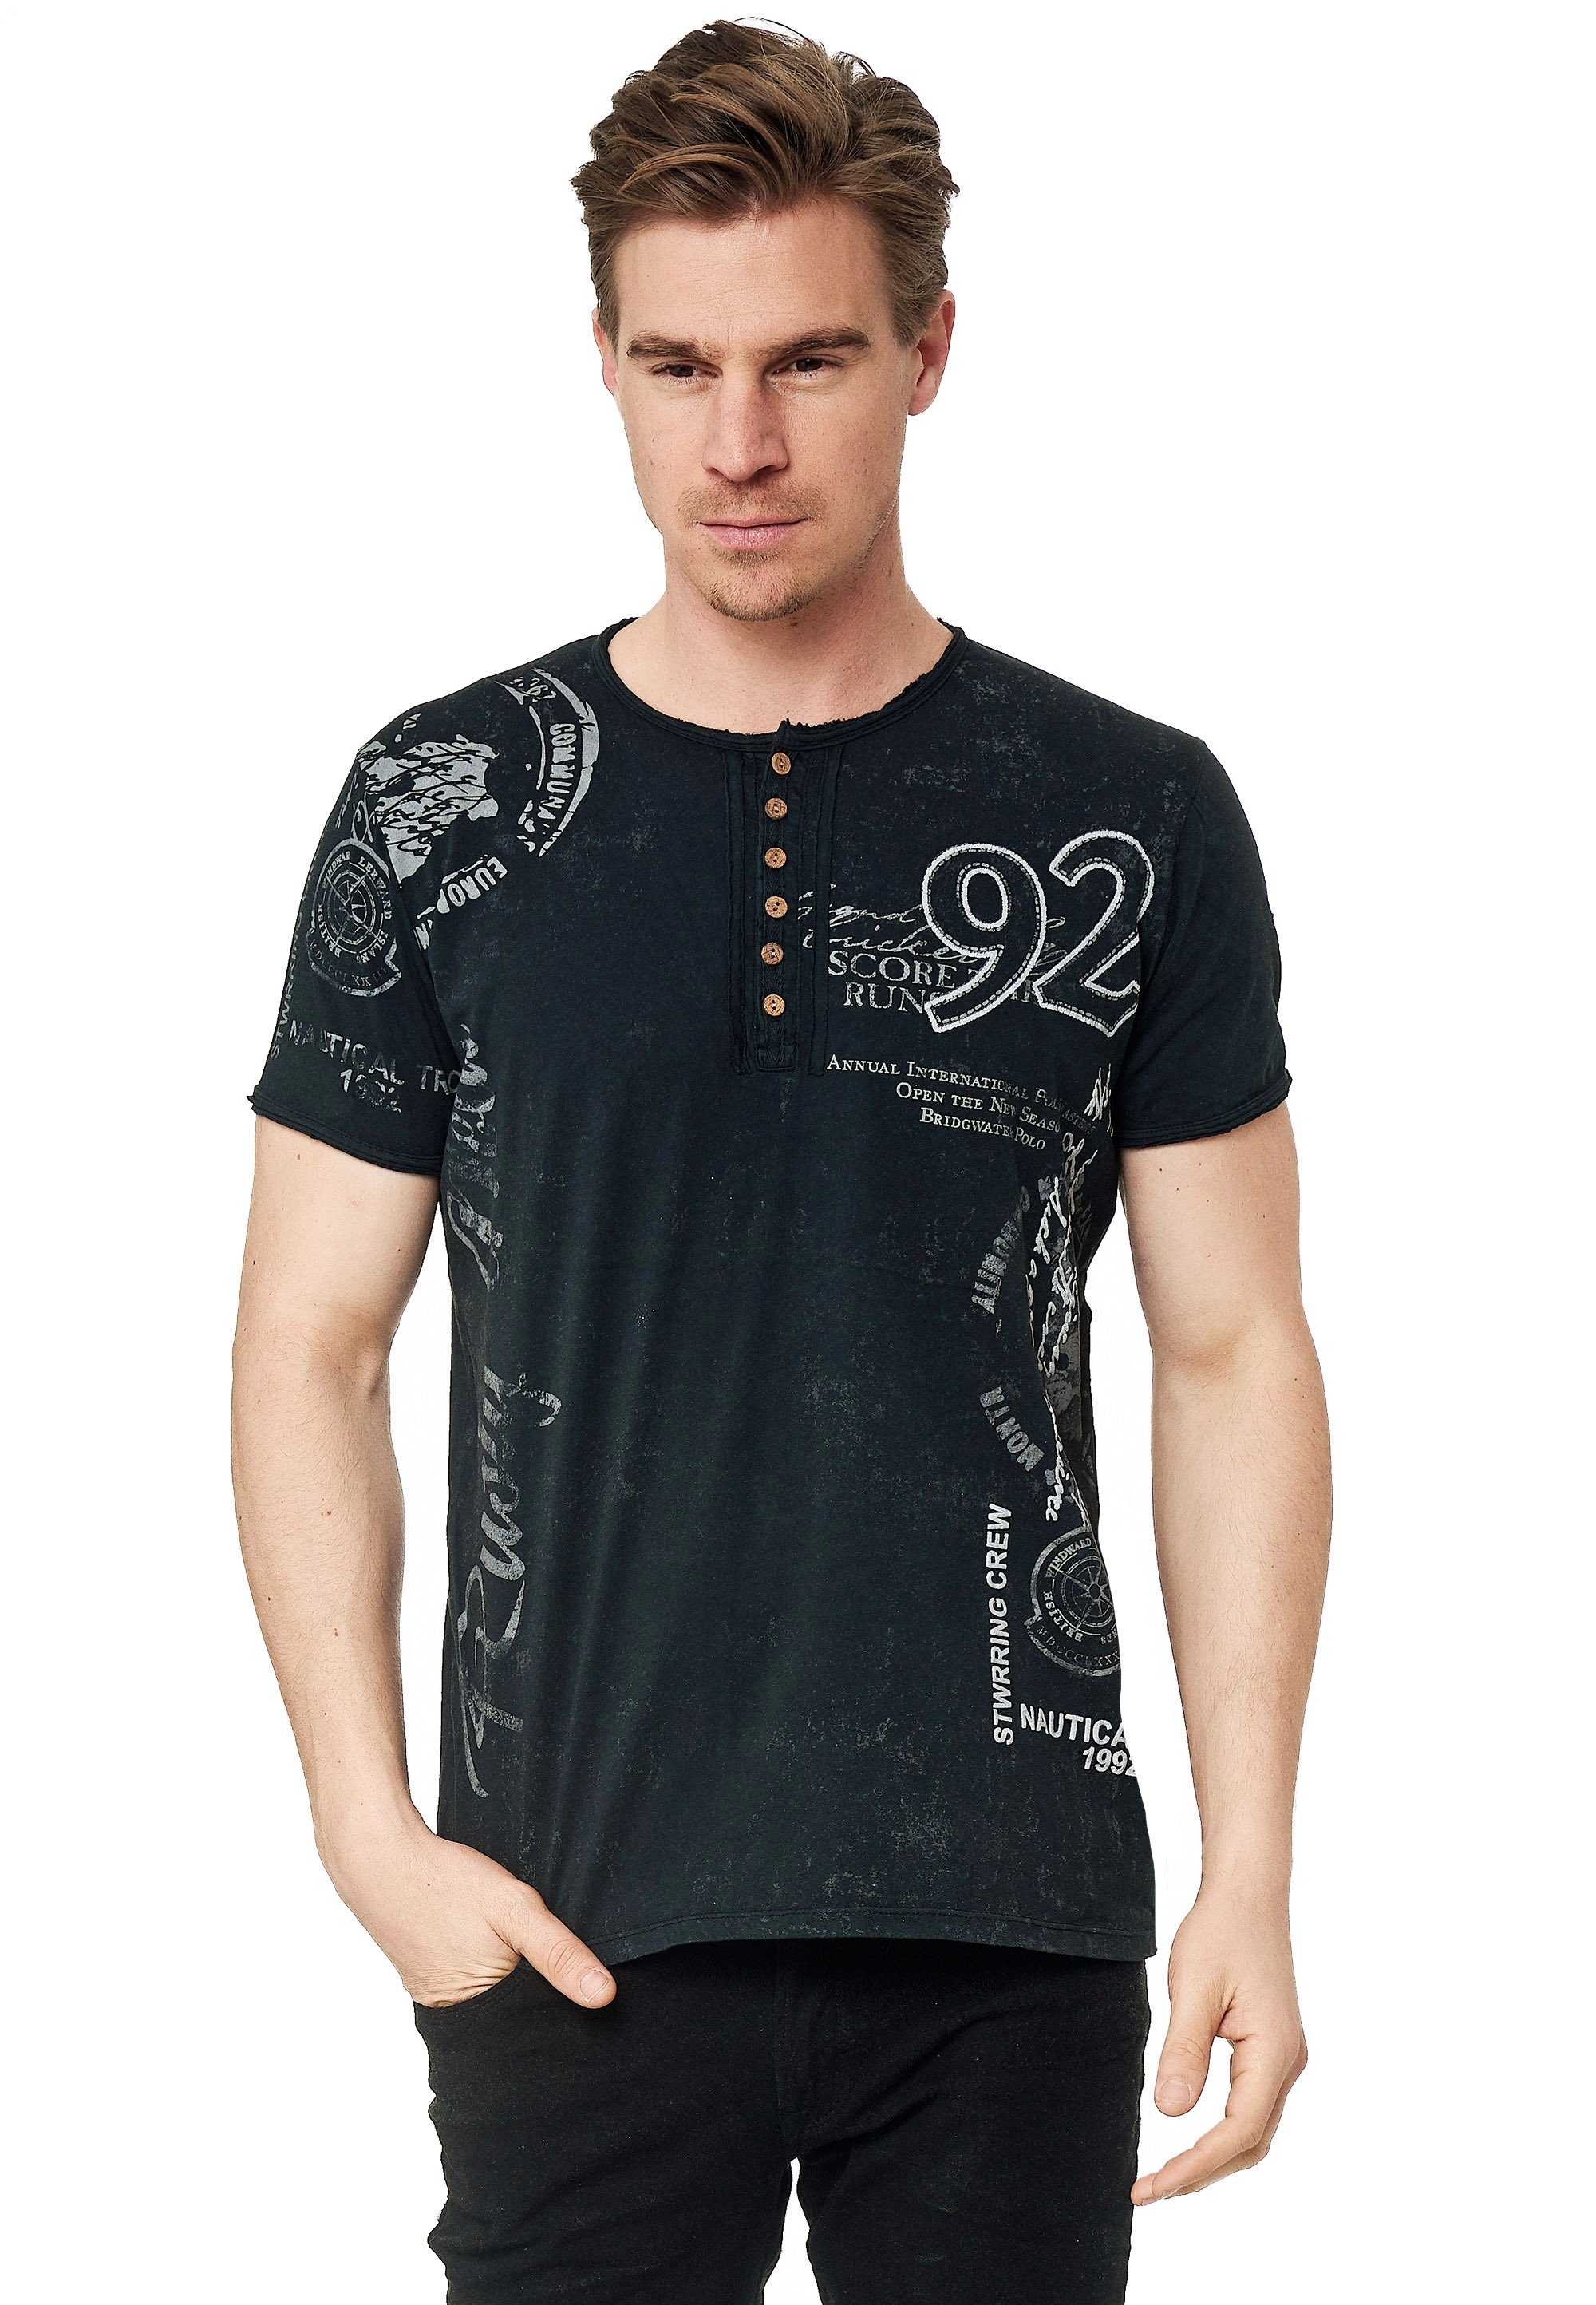 Rusty Neal T-Shirt mit seitlichem Print schwarz-weiß